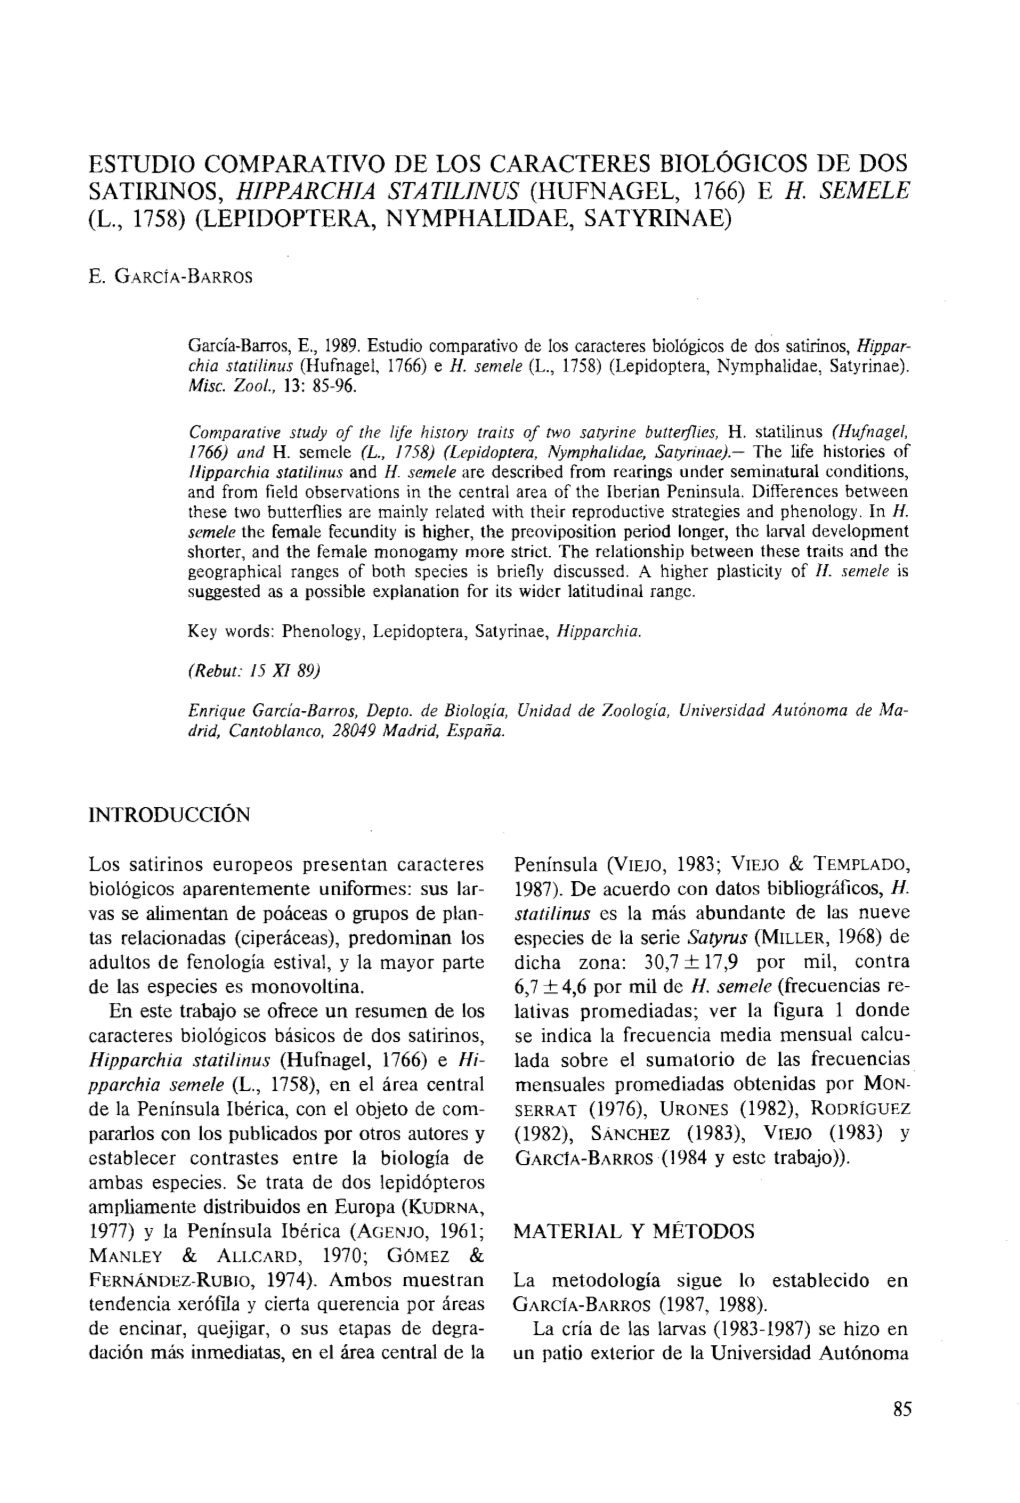 ESTUDIO COMPARATIVO DE LOS CARACTERES Biológicos DE DOS SATIRINOS, HIPPARCHIA STATILINUS (HUFNAGEL, 1766) E H. SEMELE (L., 1758